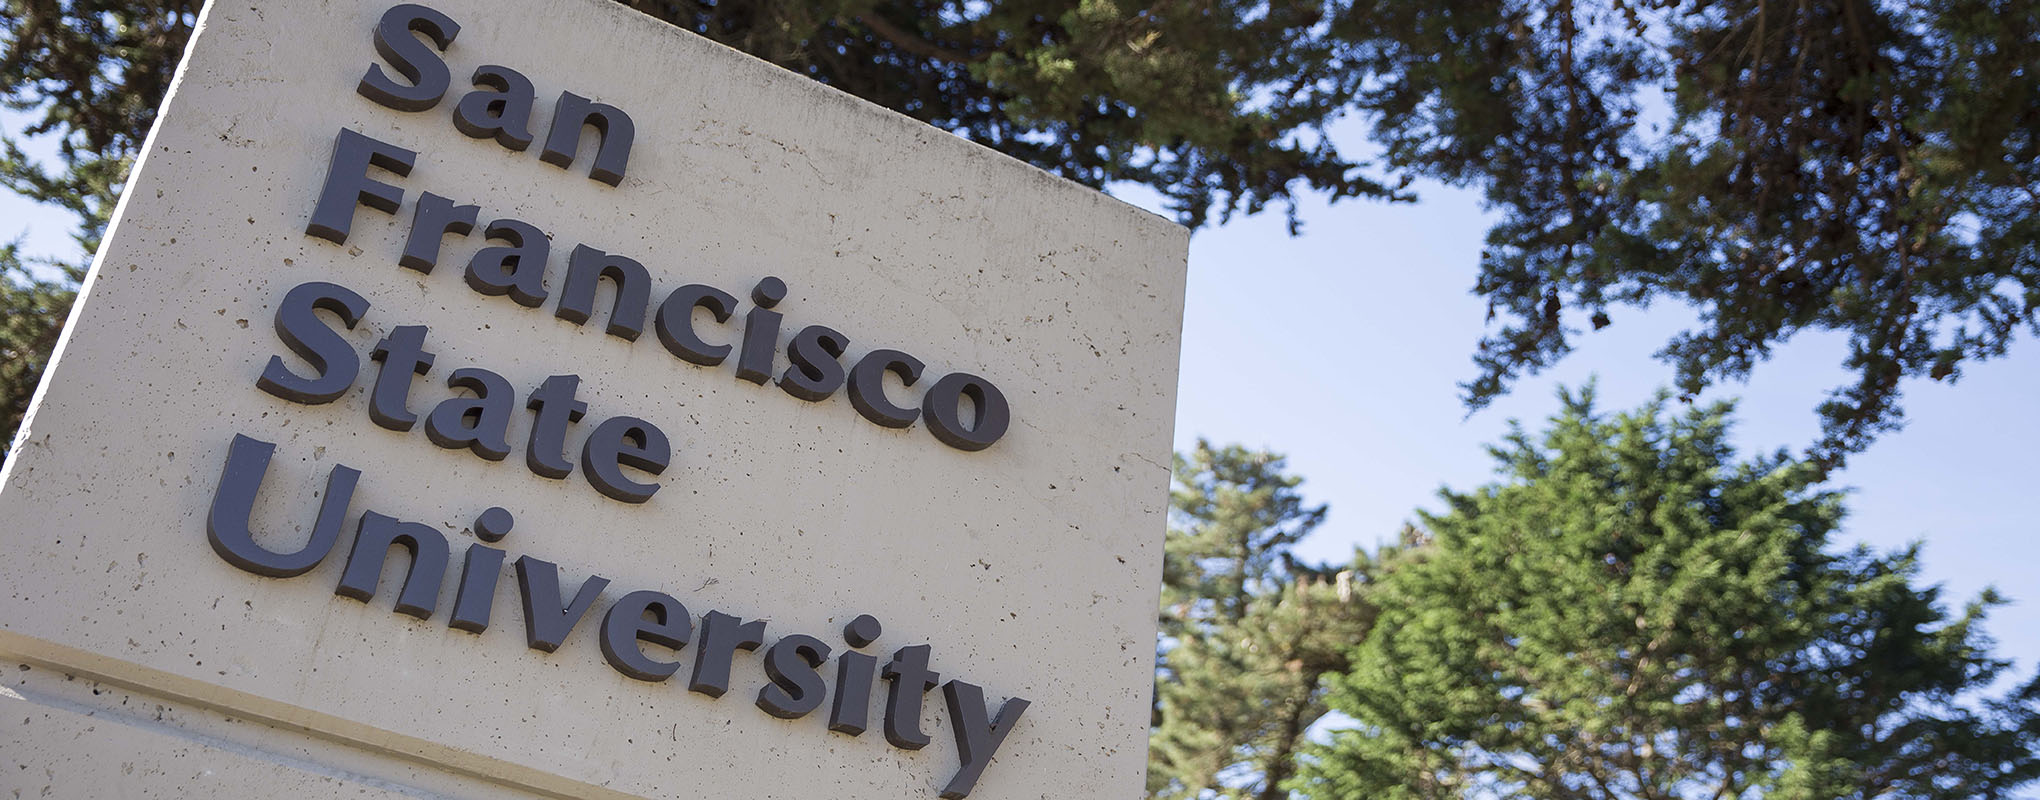 San Francisco State University signage 